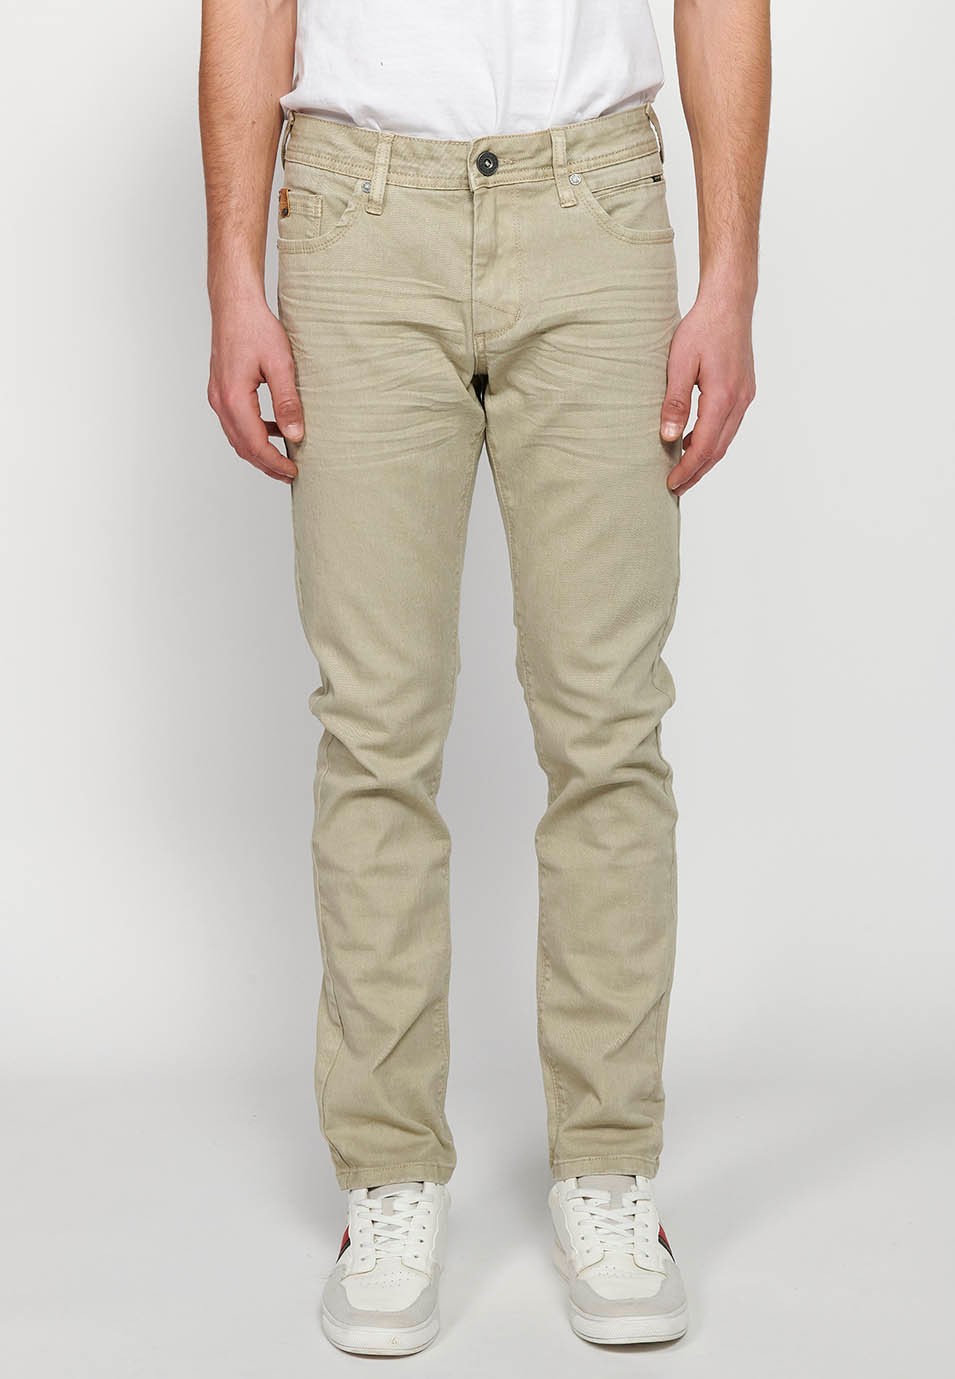 Pantalon long droit coupe classique avec fermeture sur le devant avec fermeture éclair et bouton avec cinq poches, une poche en couleur pierre pour homme